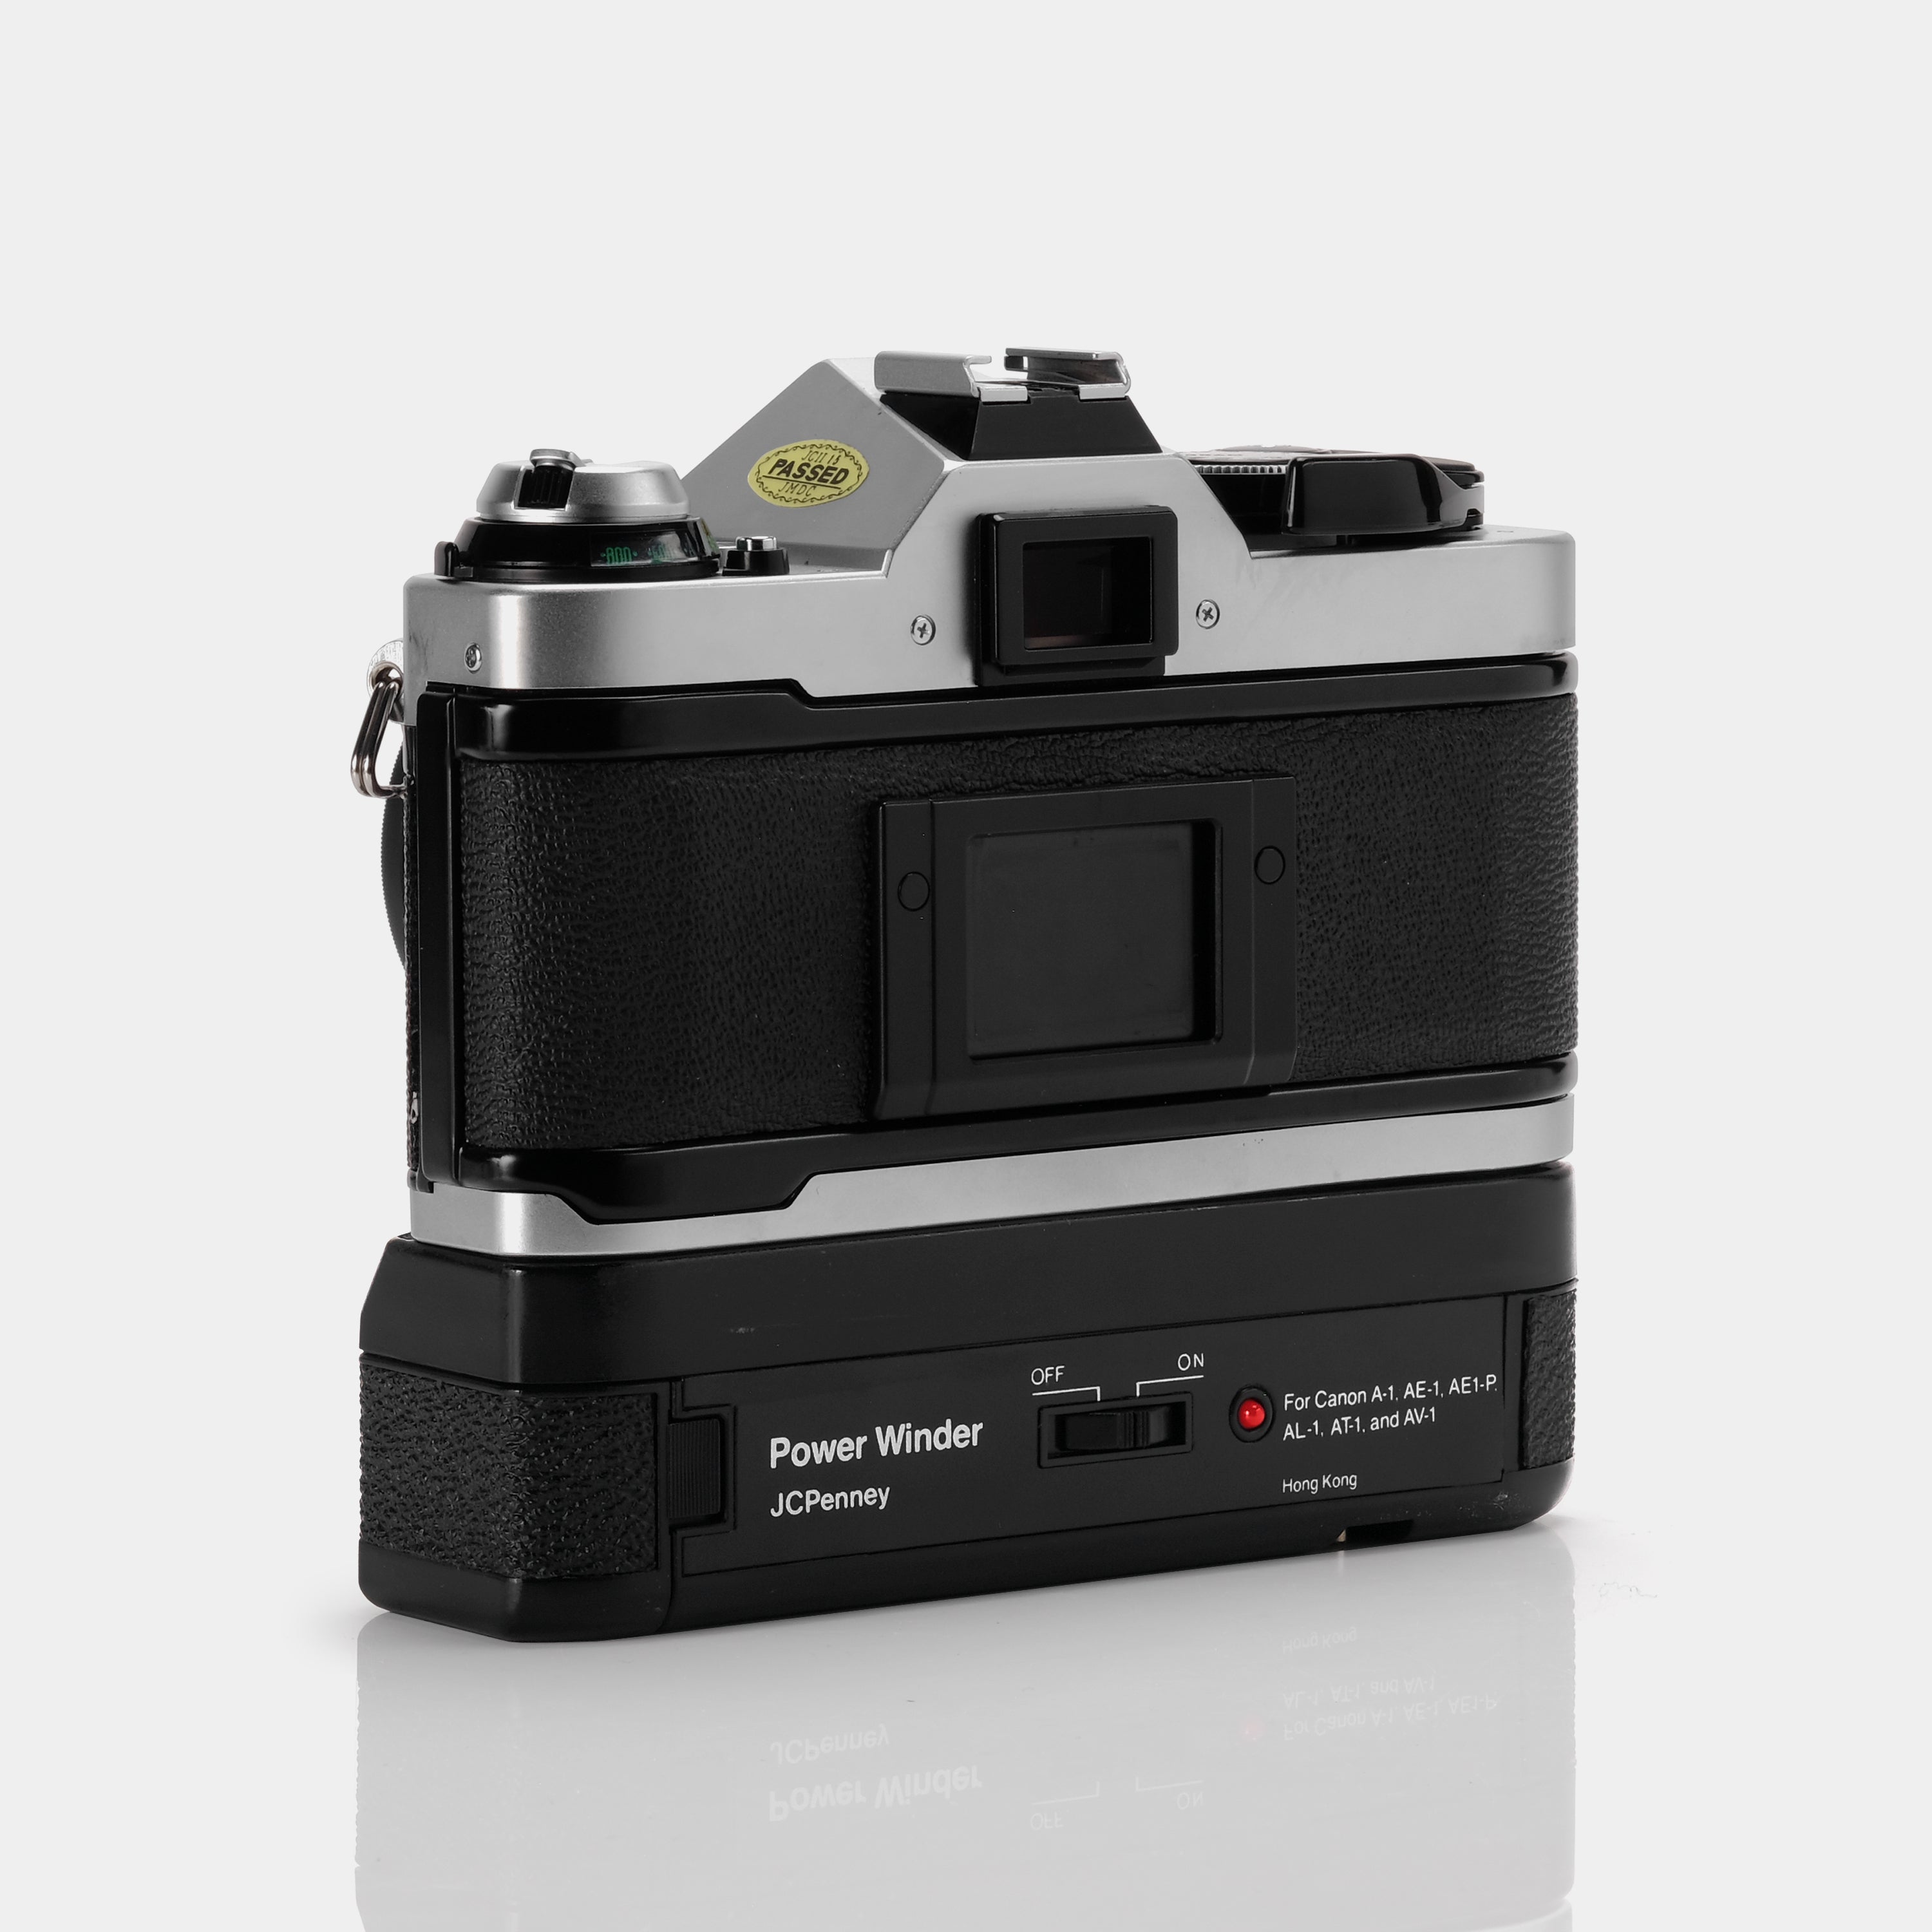 Canon AE-1 Program SLR 35mm Film Camera ("Action Kit")